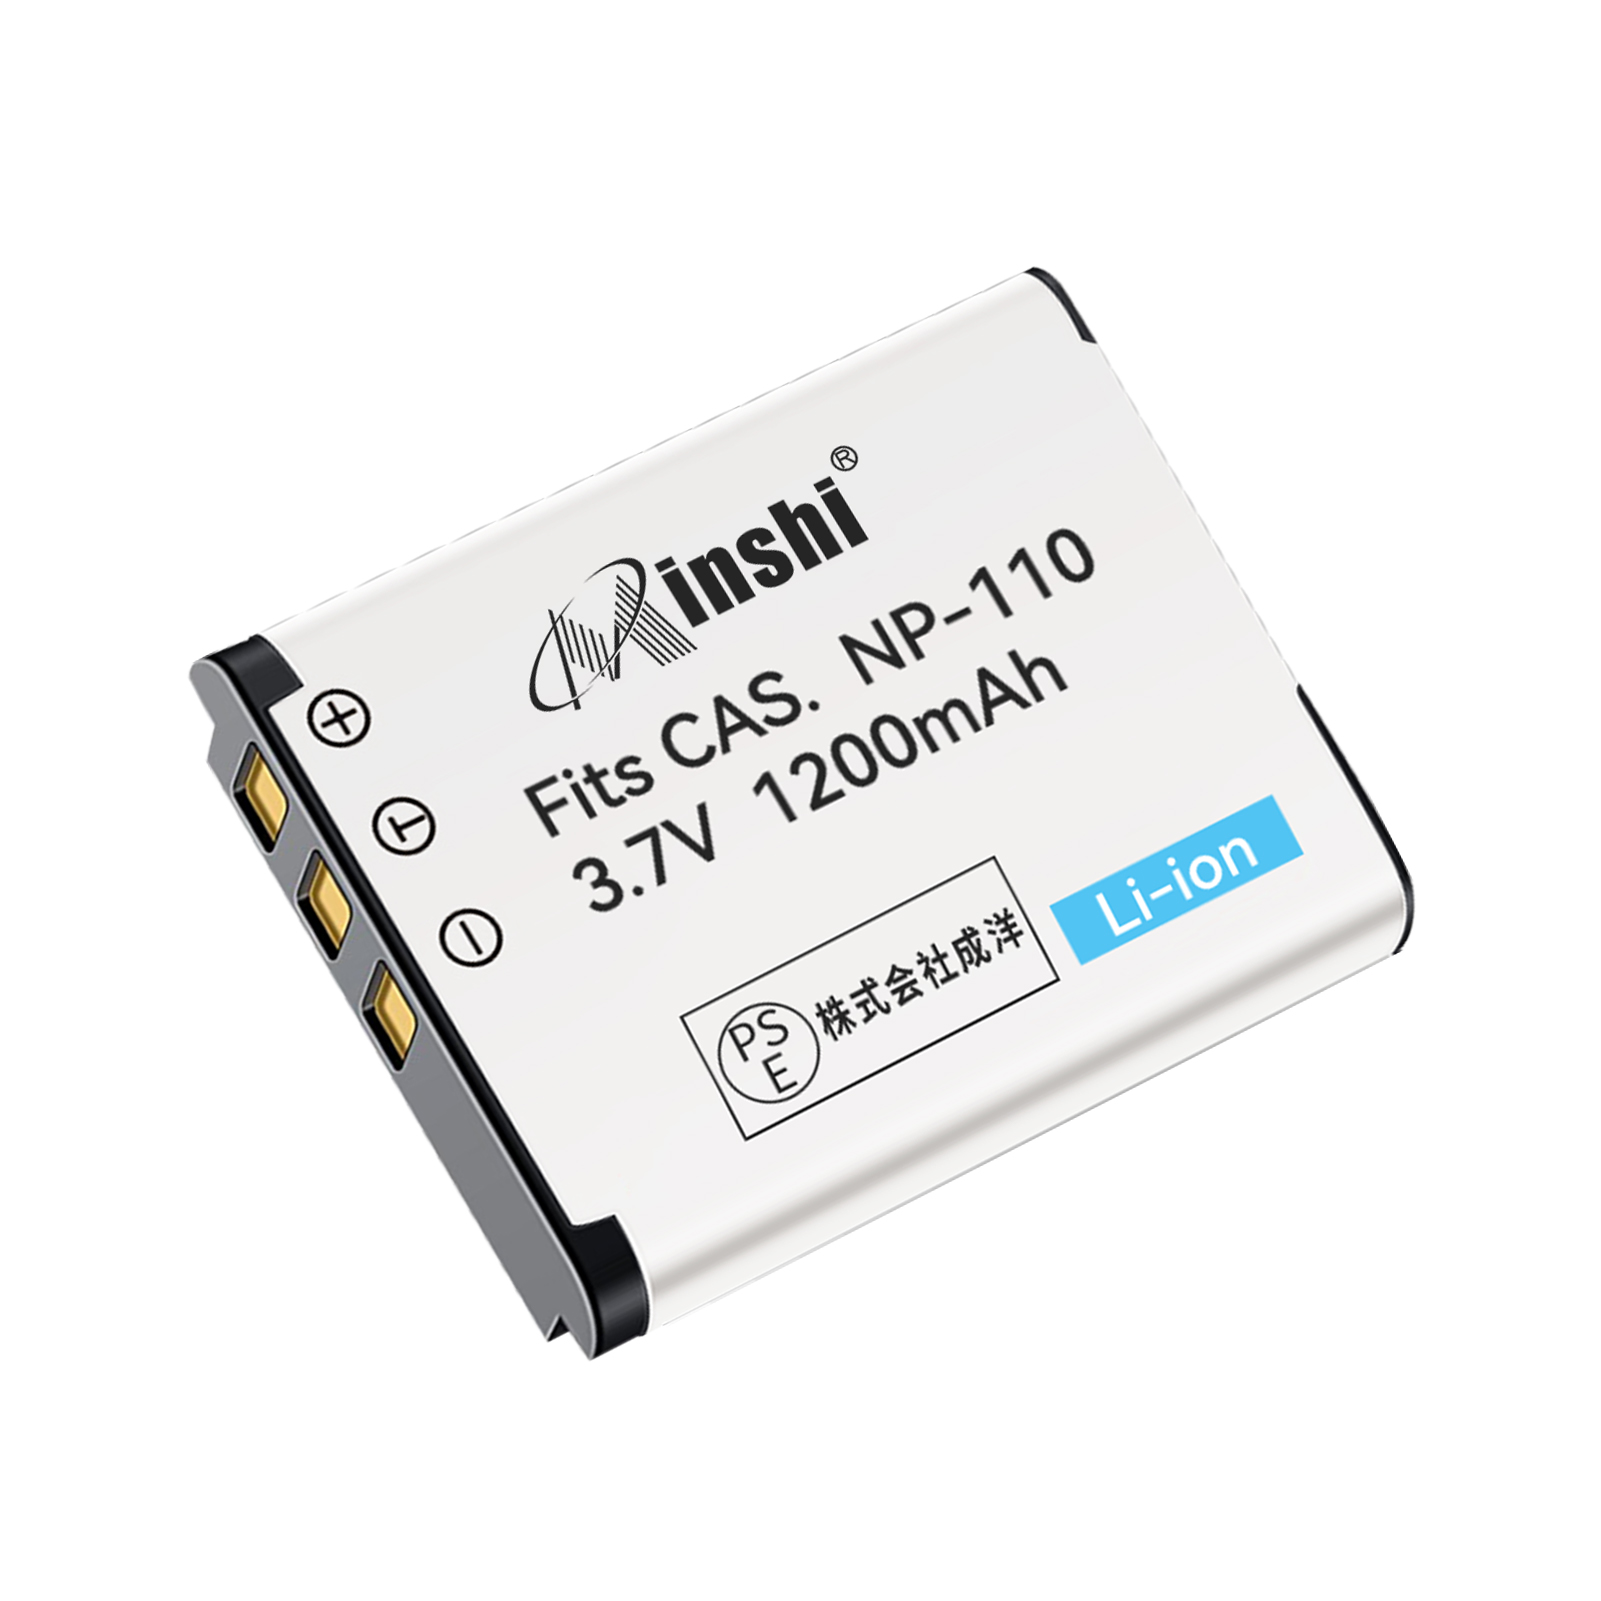 【1年保証】minshi CASIO BN-VG212U NP-110 【1200mAh 3.7V】PSE認定済 高品質交換用バッテリー